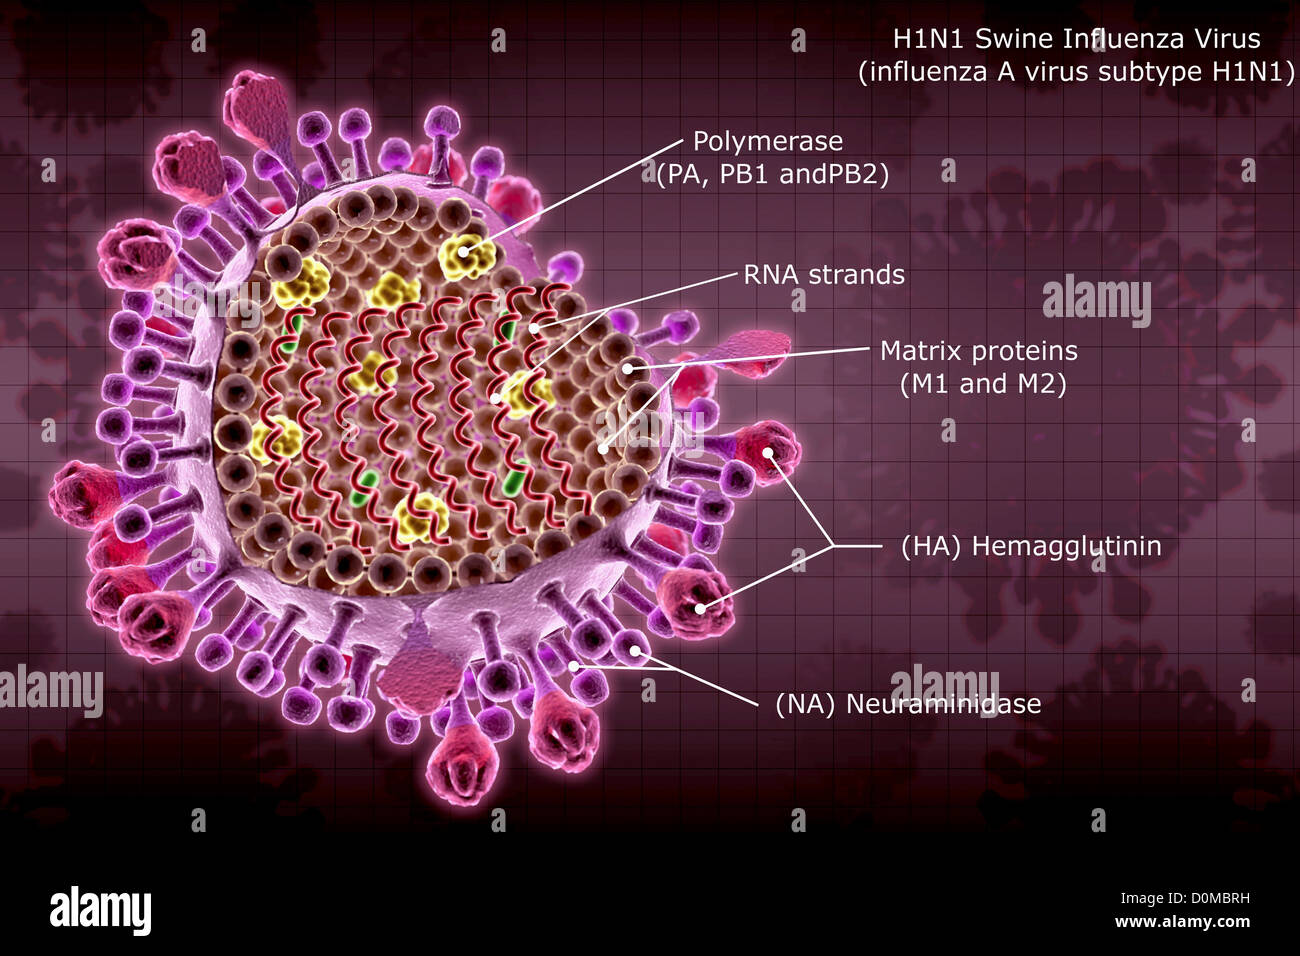 RÃ©sultat de recherche d'images pour "Grippe porcine, FiÃ¨vre porcine ou influenza porcine"